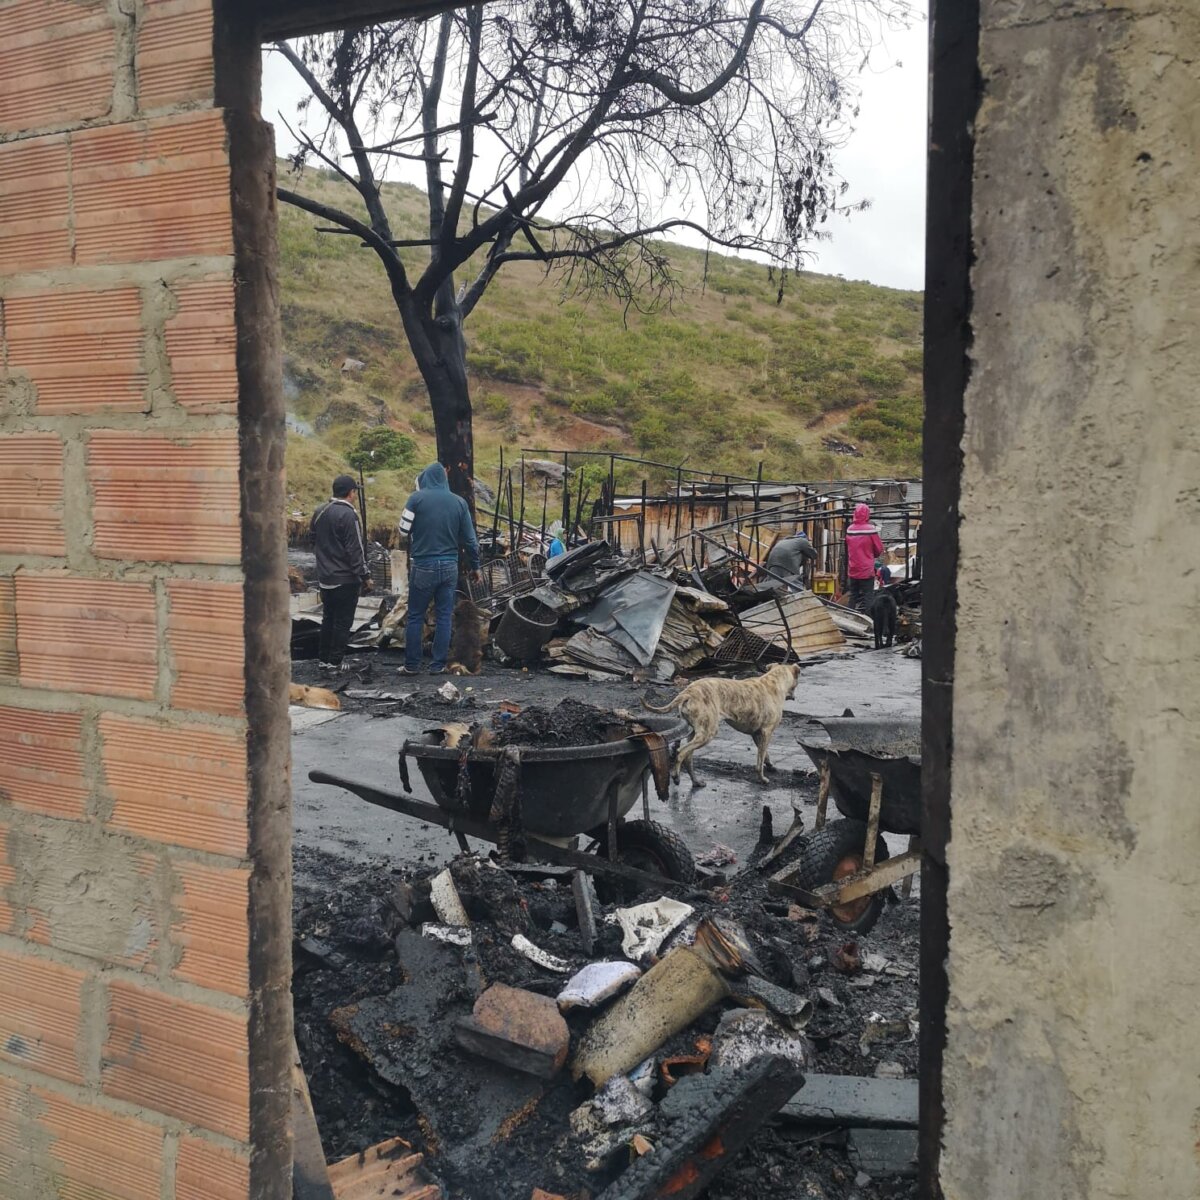 La devastación tras las llamas: el día después del incendio en Ciudad Bolívar Cerca de las cinco de la tarde de este martes se presentó un grave incendio en el sector del Paraíso, en la parte alta de la localidad de Ciudad Bolívar.